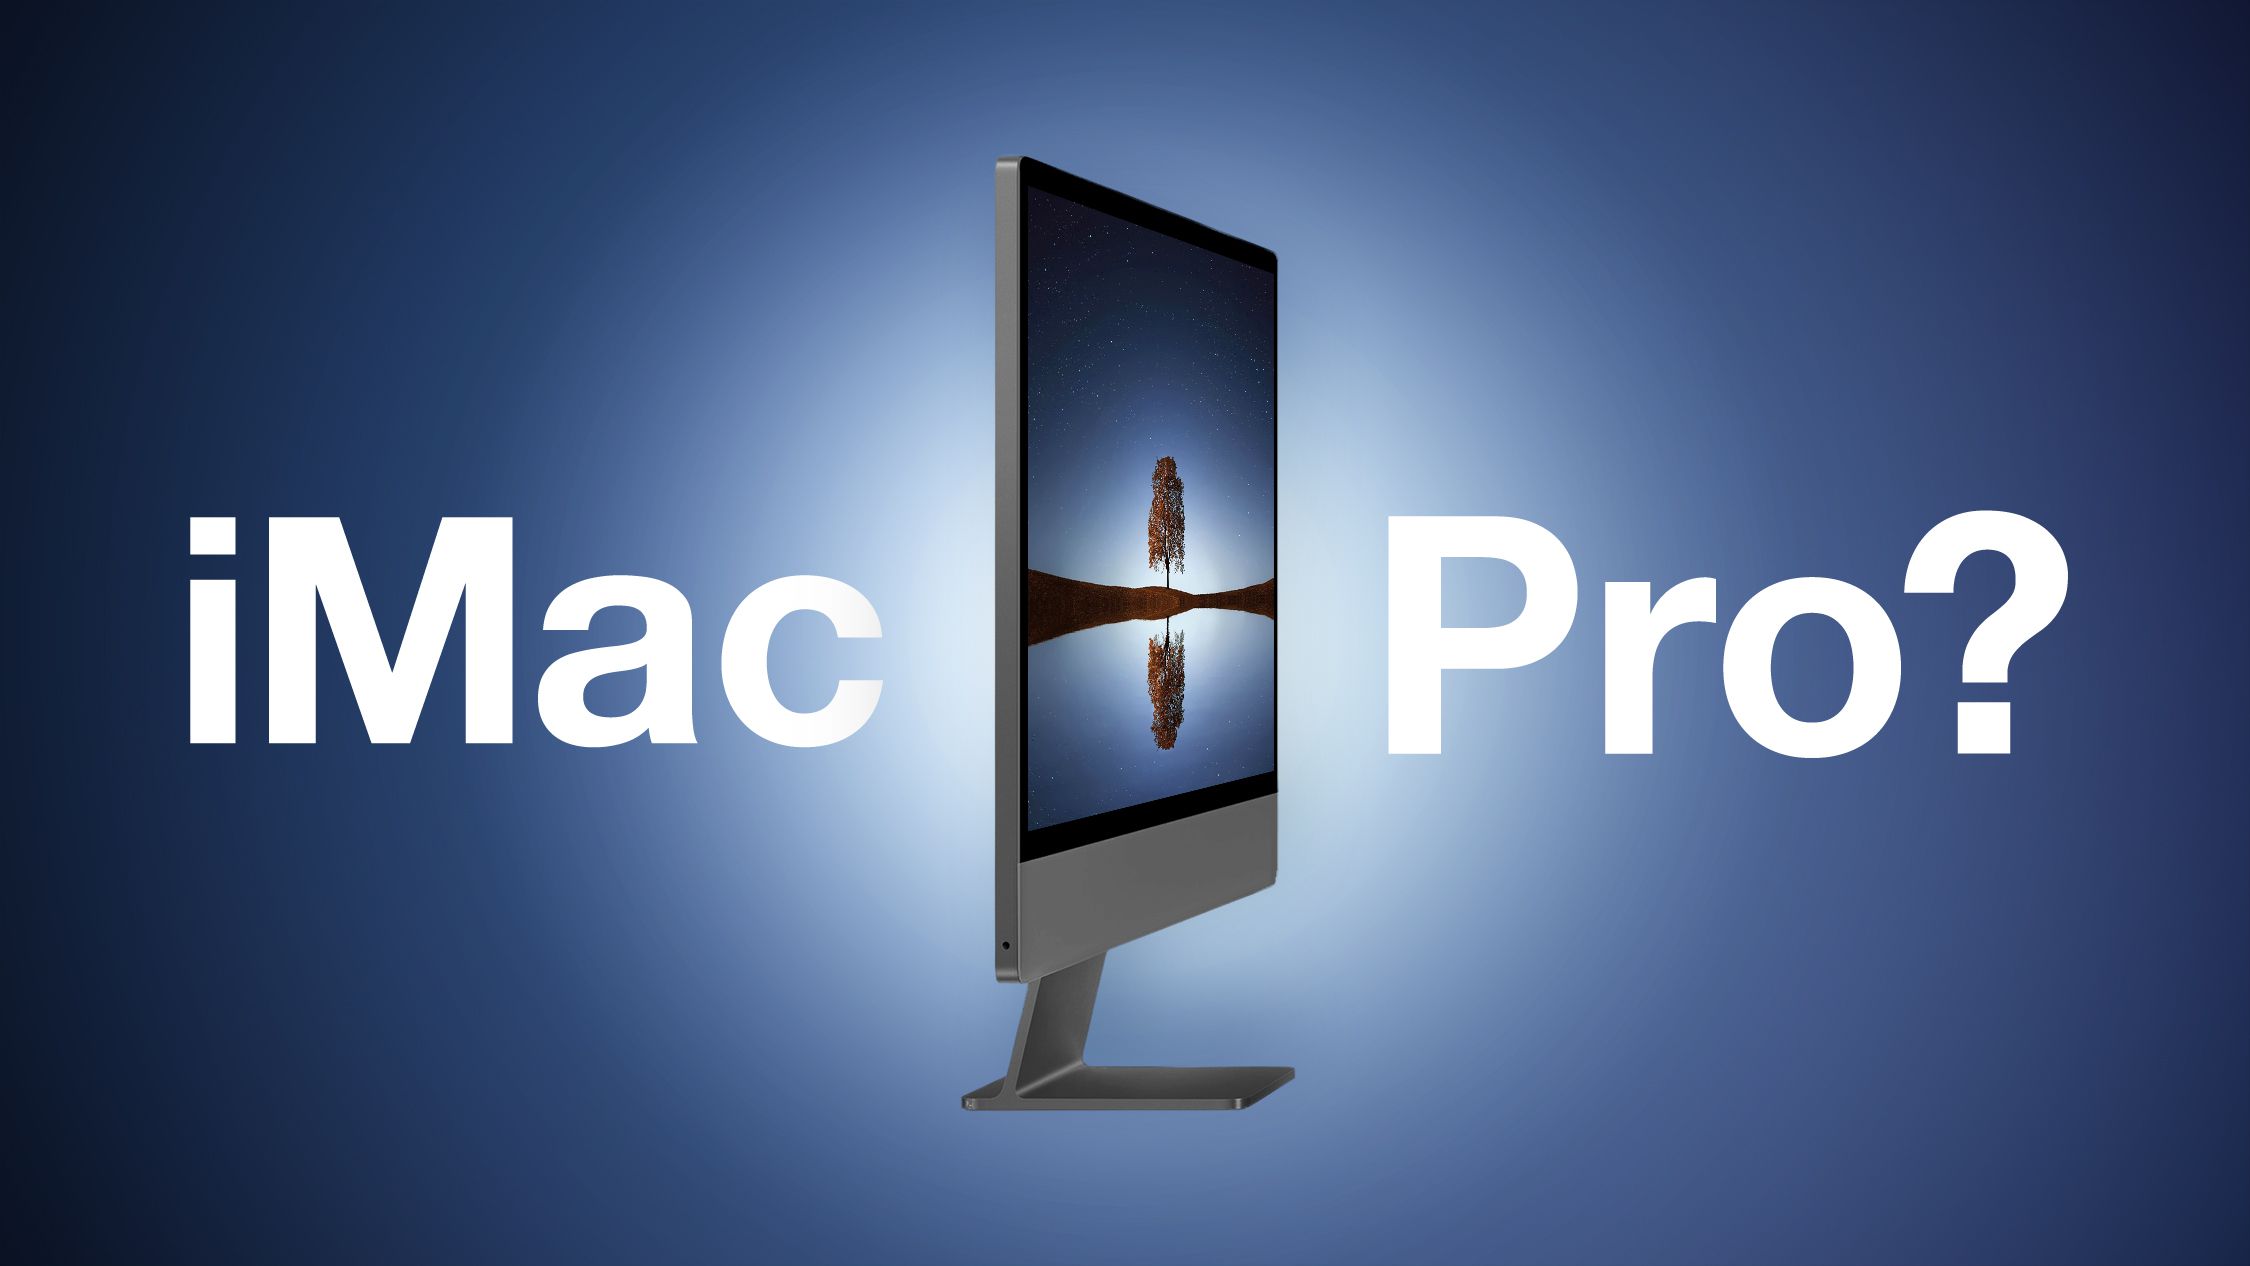 Liệu sẽ có iMac Pro khác sắp ra mắt?